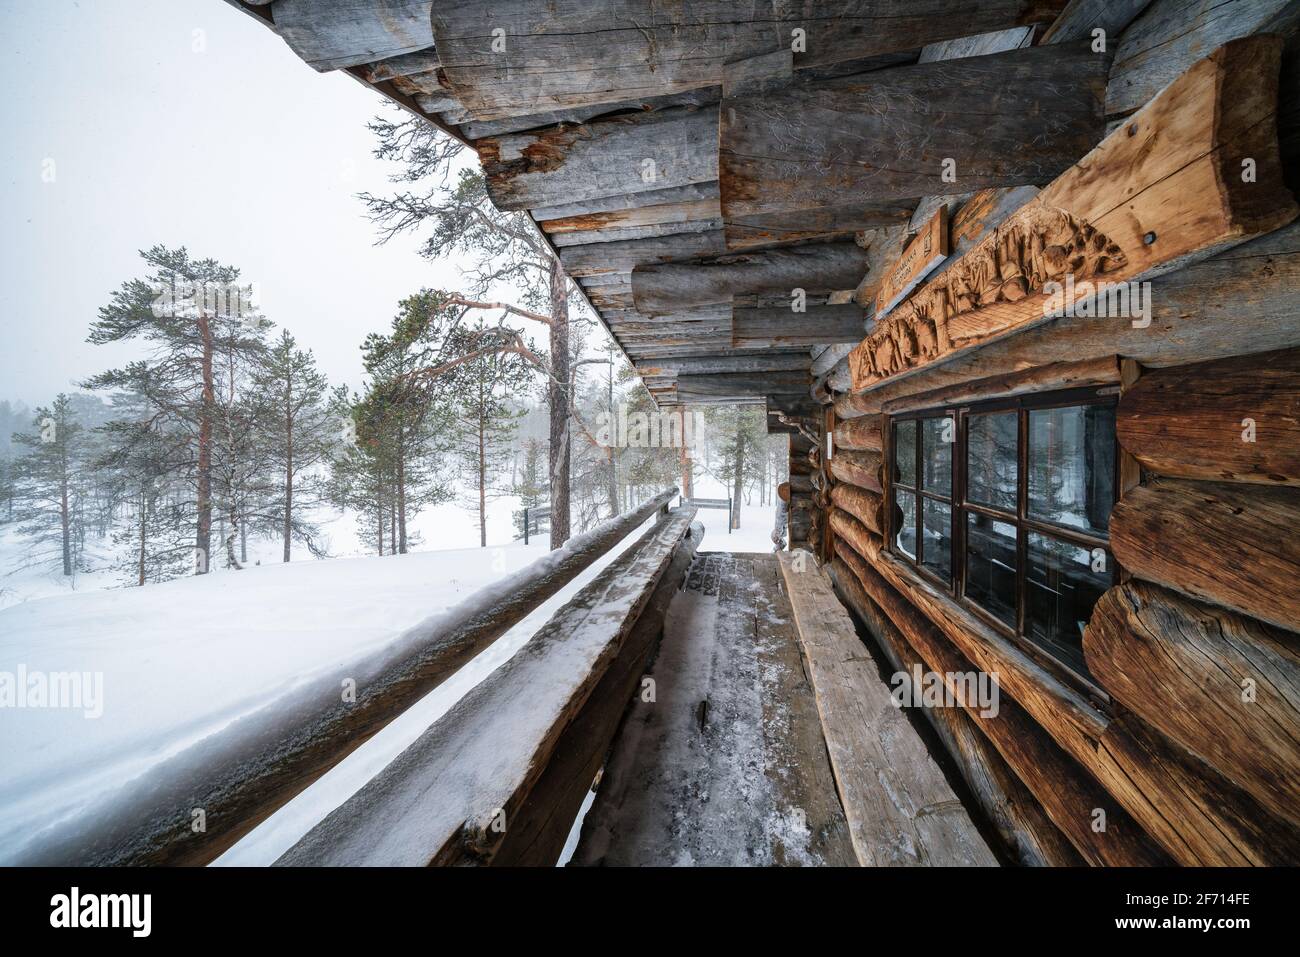 Anterinmukka open wilderness hut, Sodankylä, Lapland, Finland Stock Photo